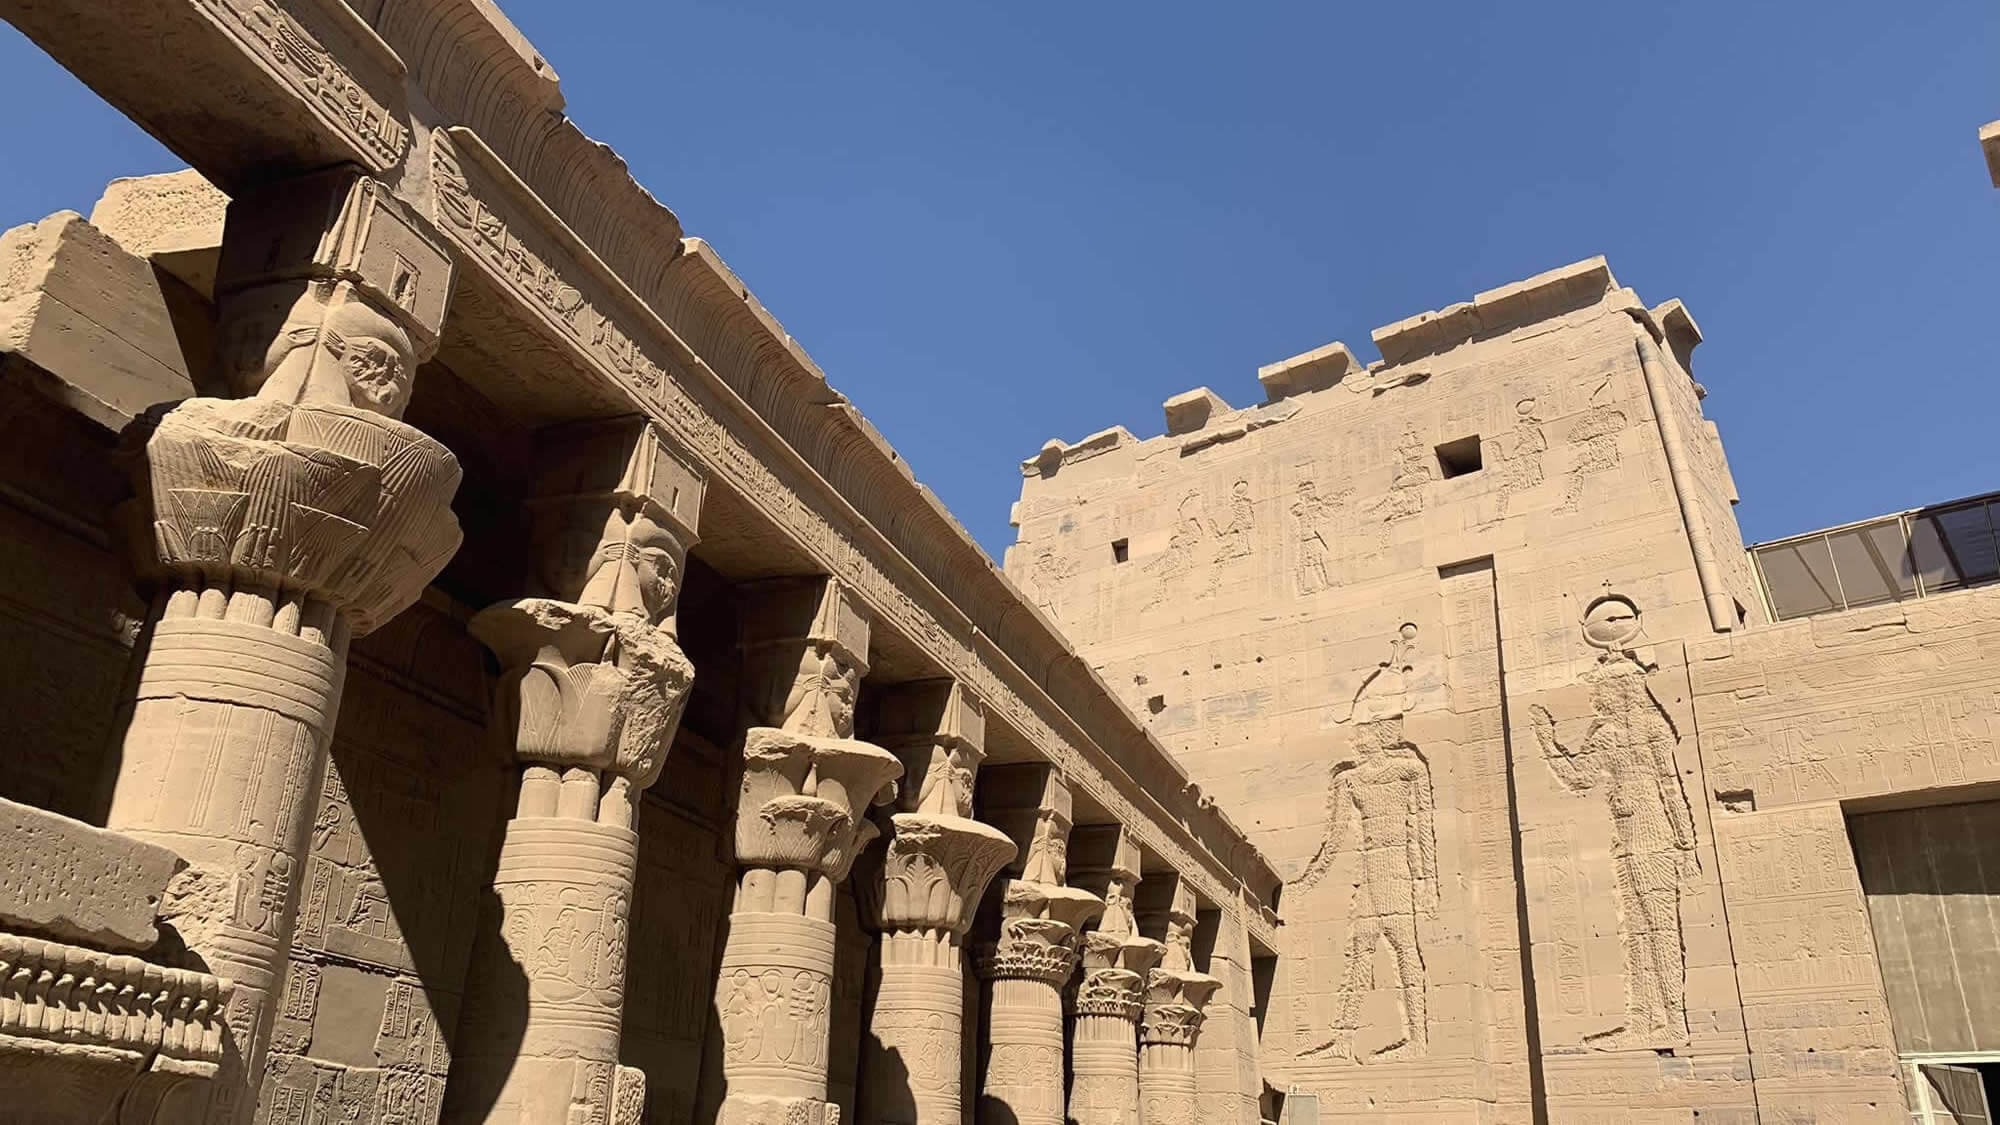 視察レポート アスワン観光 イシス神殿 切りかけのオベリスク エジプト 19年11月視察 ティースタイル オーダーメイドツアー